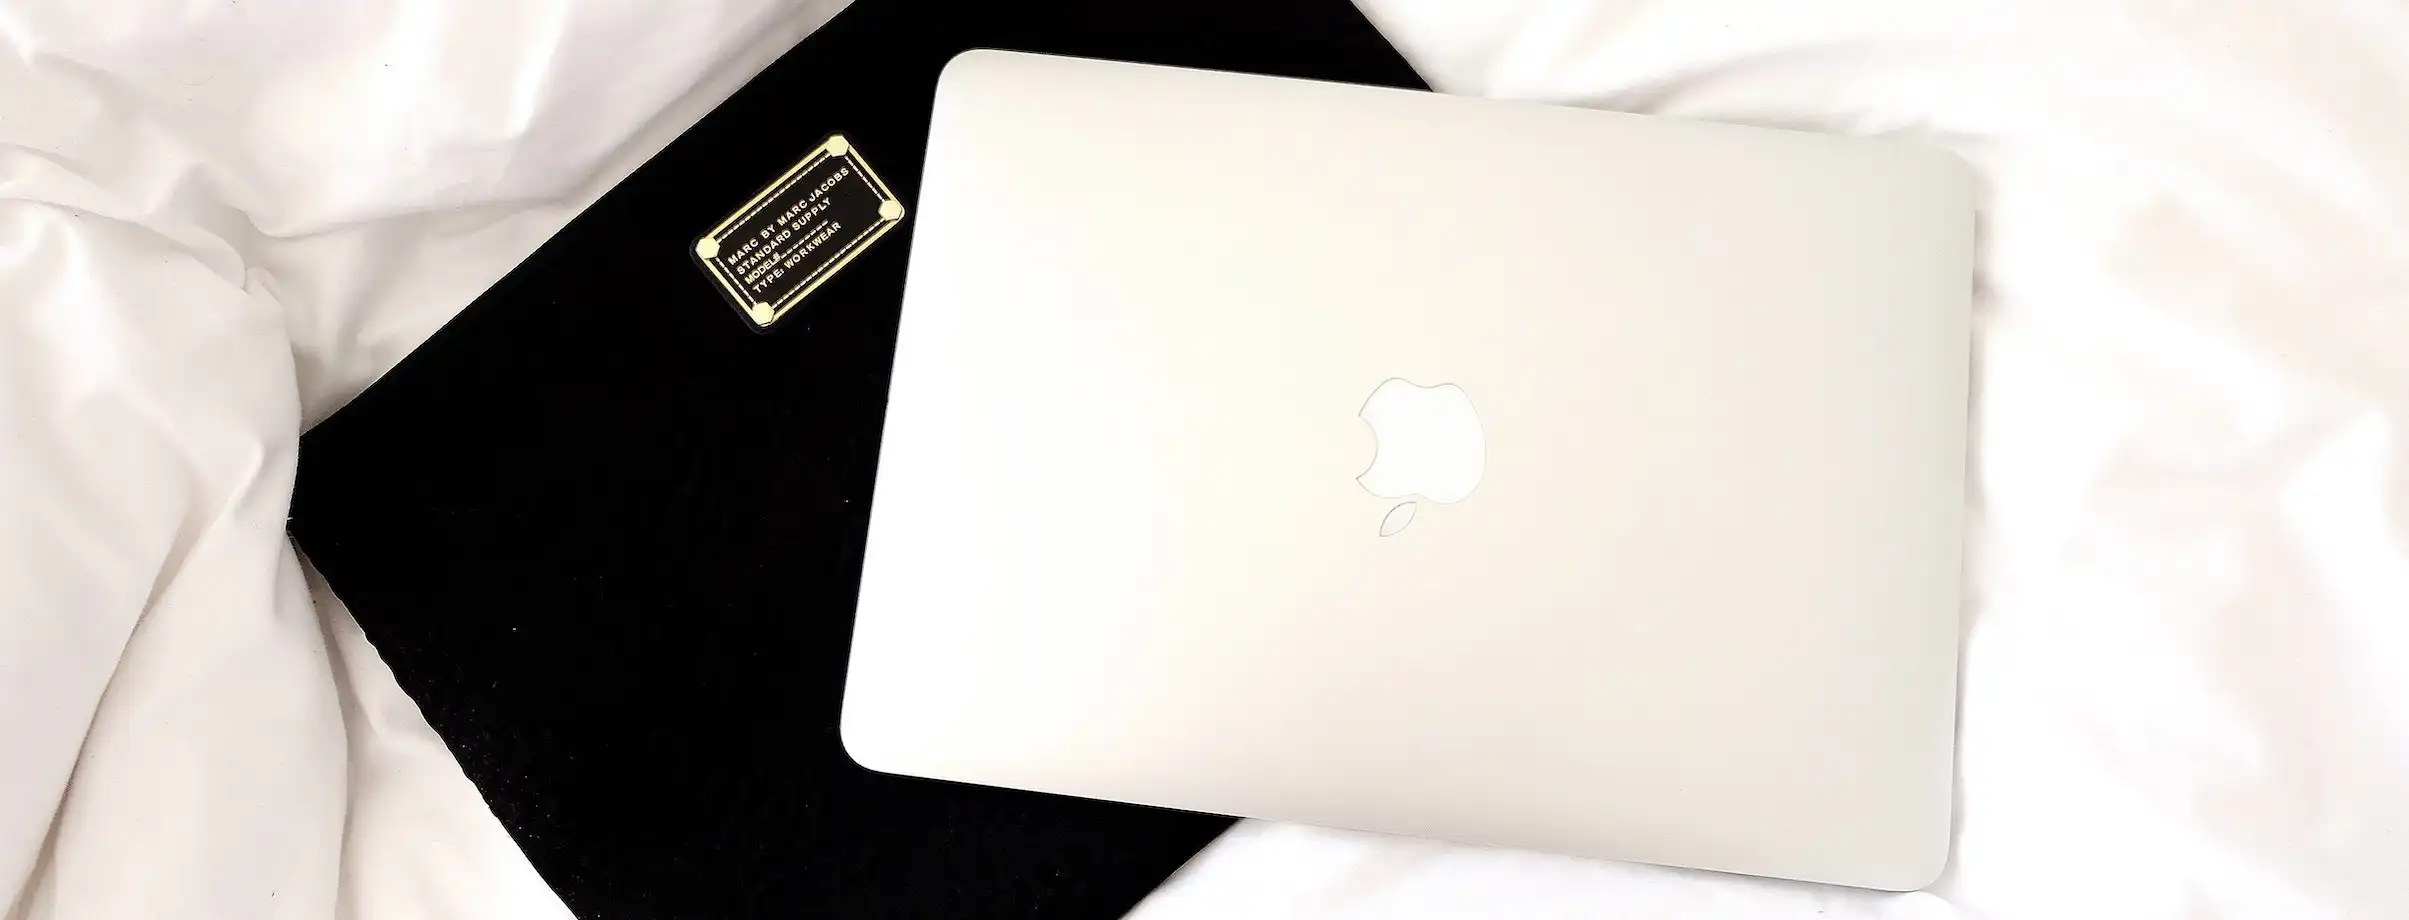 Macbook Air on Top White Blanket